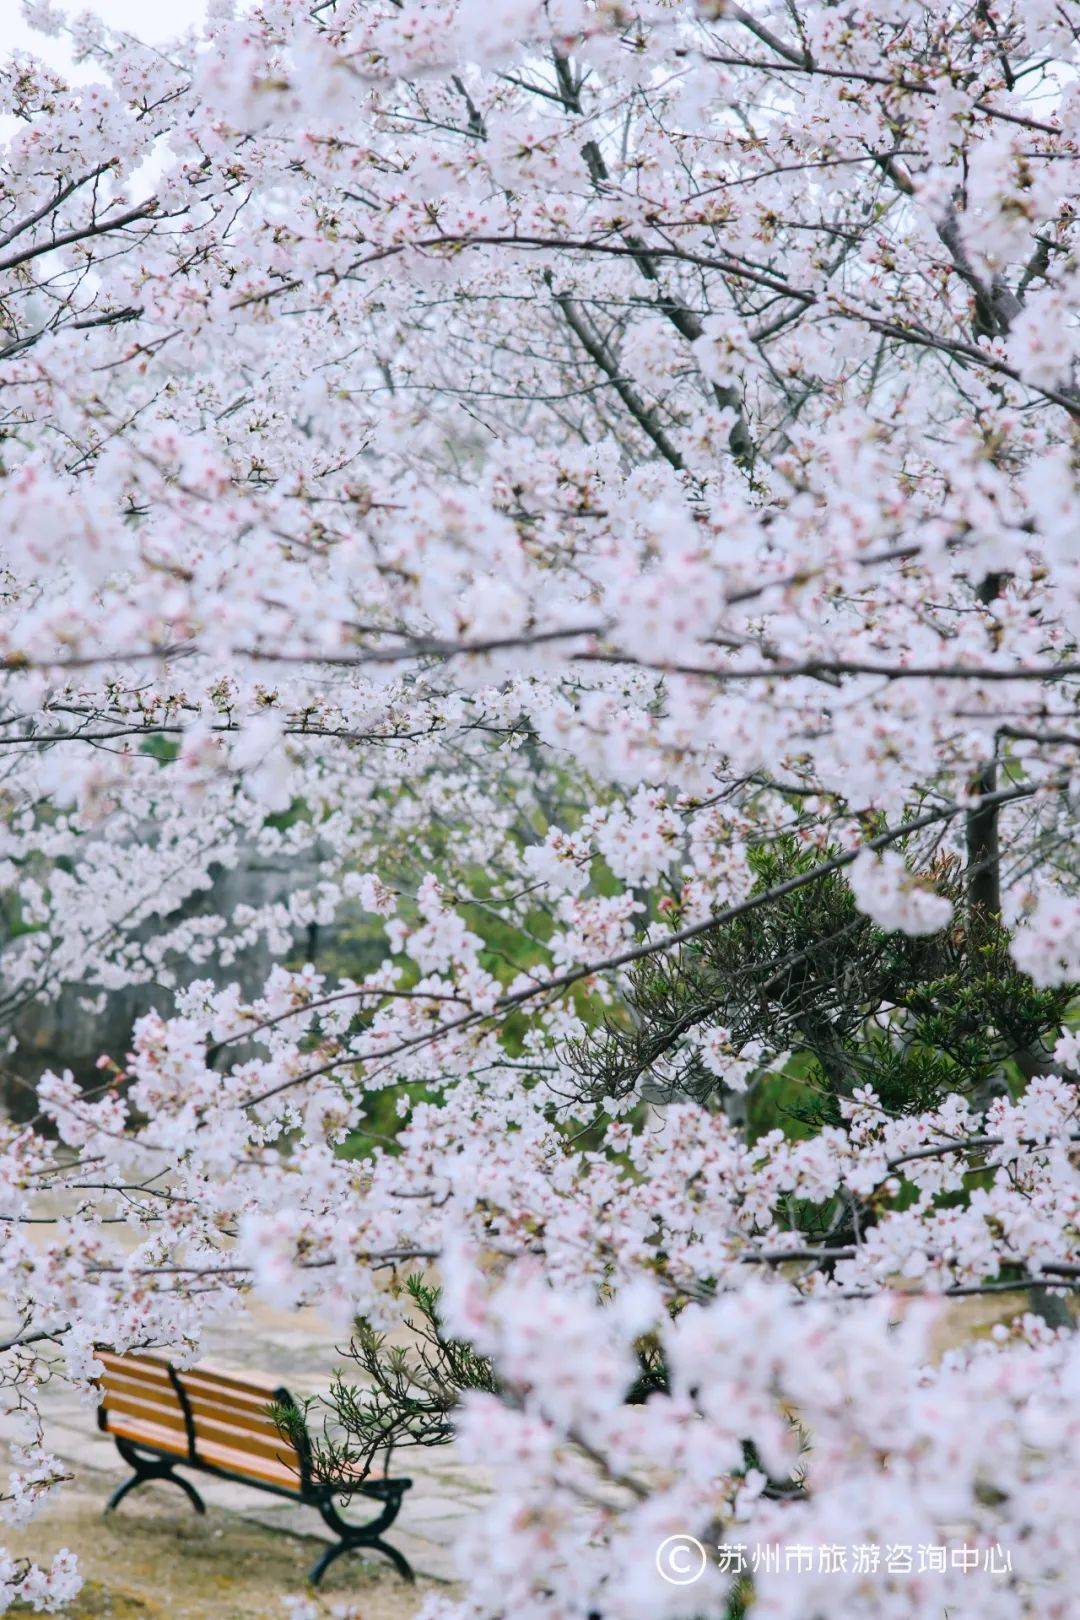 落樱成诗，苏州的樱花没有缺席，还好没错过，温暖的阳春就在前方